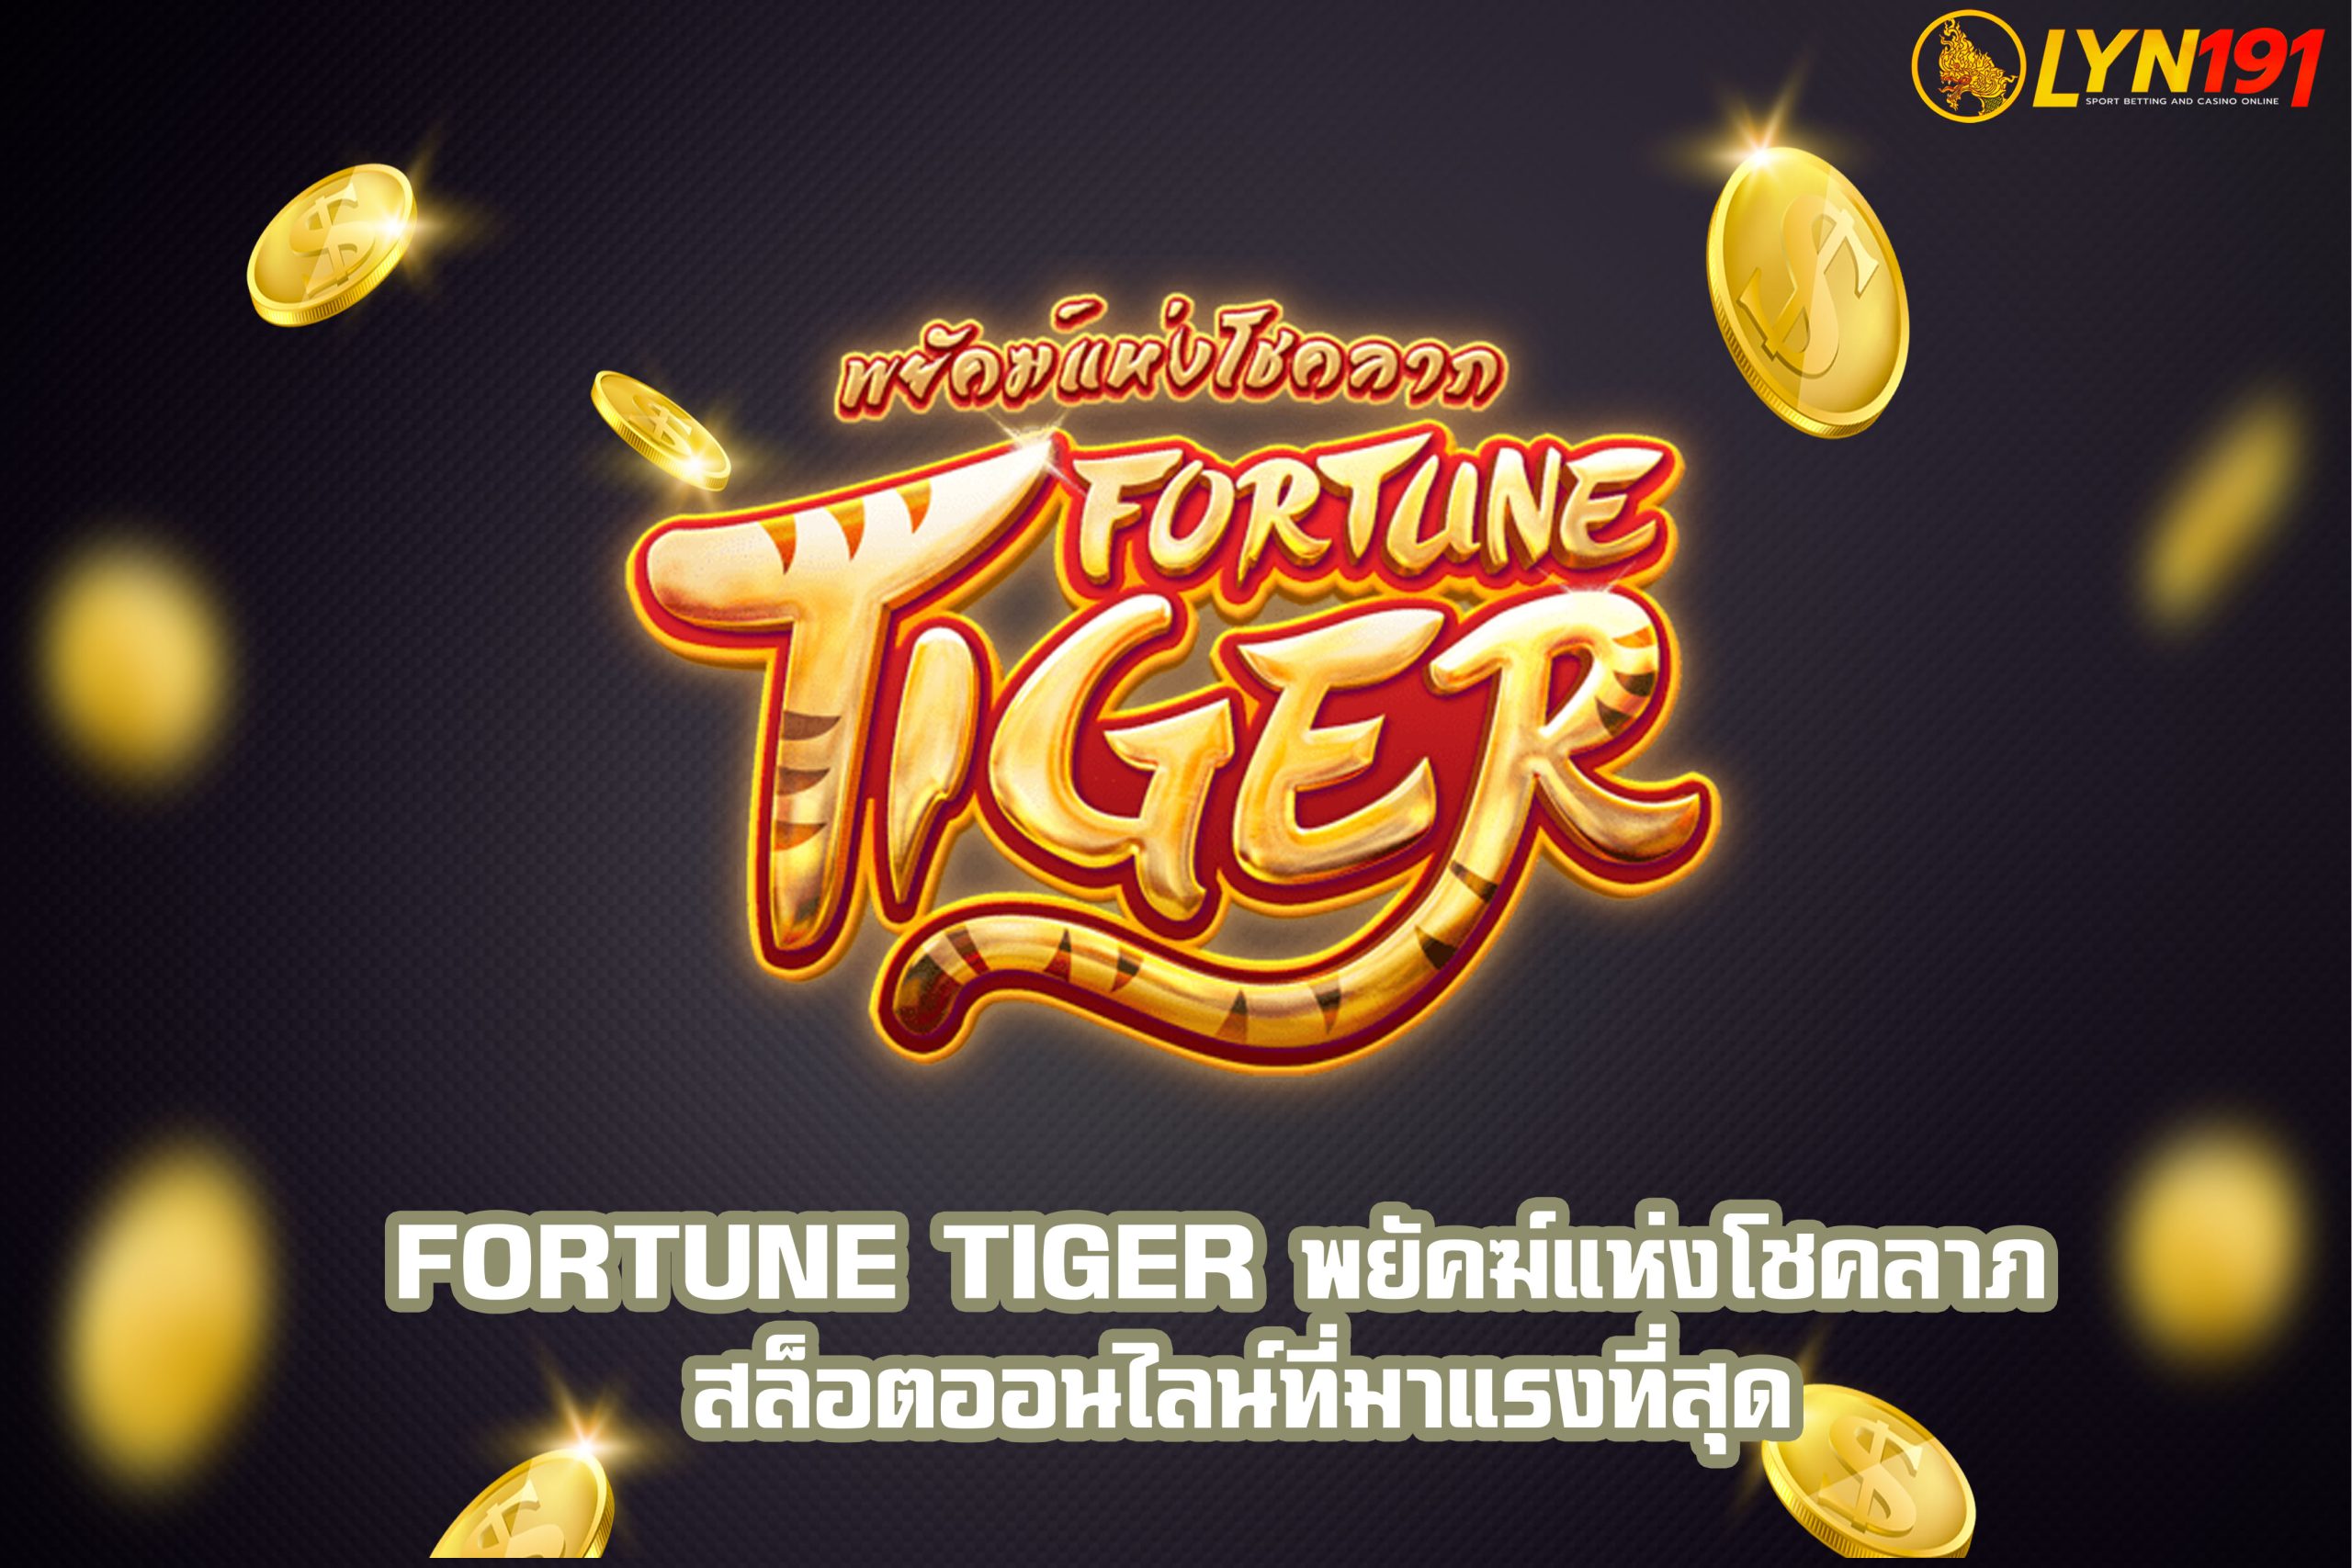 Fortune Tiger พยัคฆ์แห่งโชคลาภ สล็อตออนไลน์ที่มาแรงที่สุด